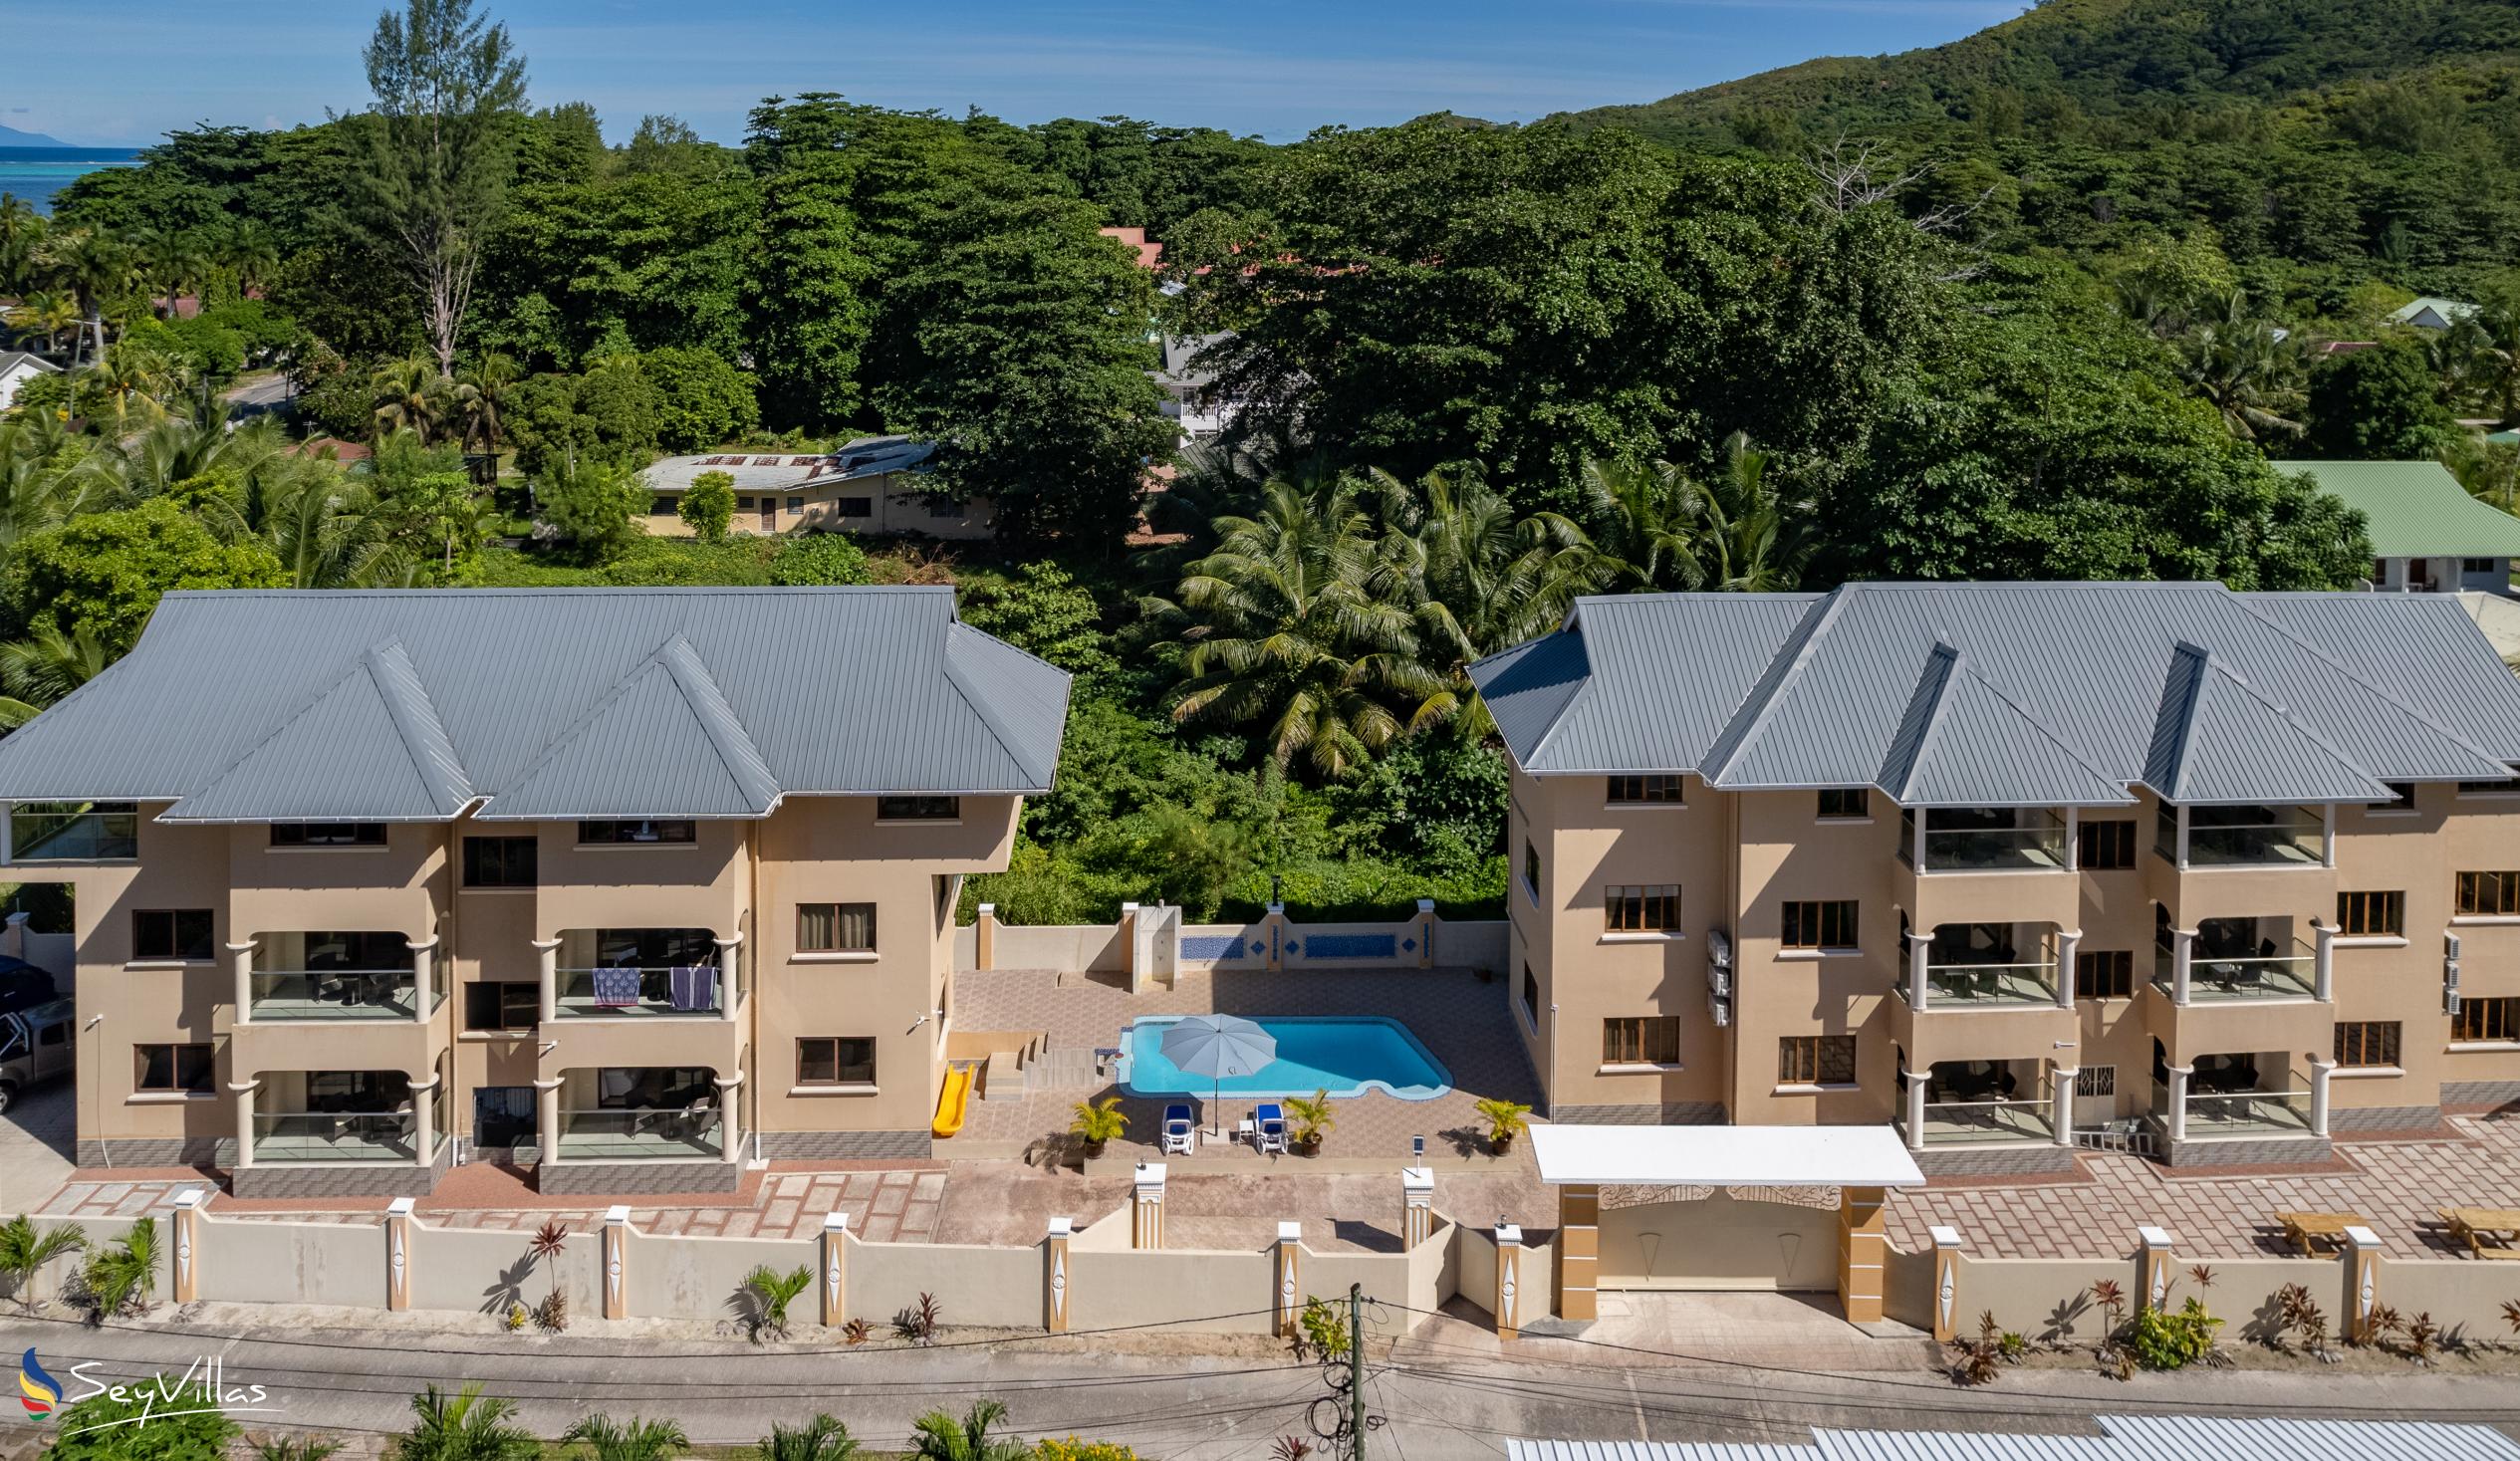 Foto 2: Stone Self Catering Apartments - Aussenbereich - Praslin (Seychellen)